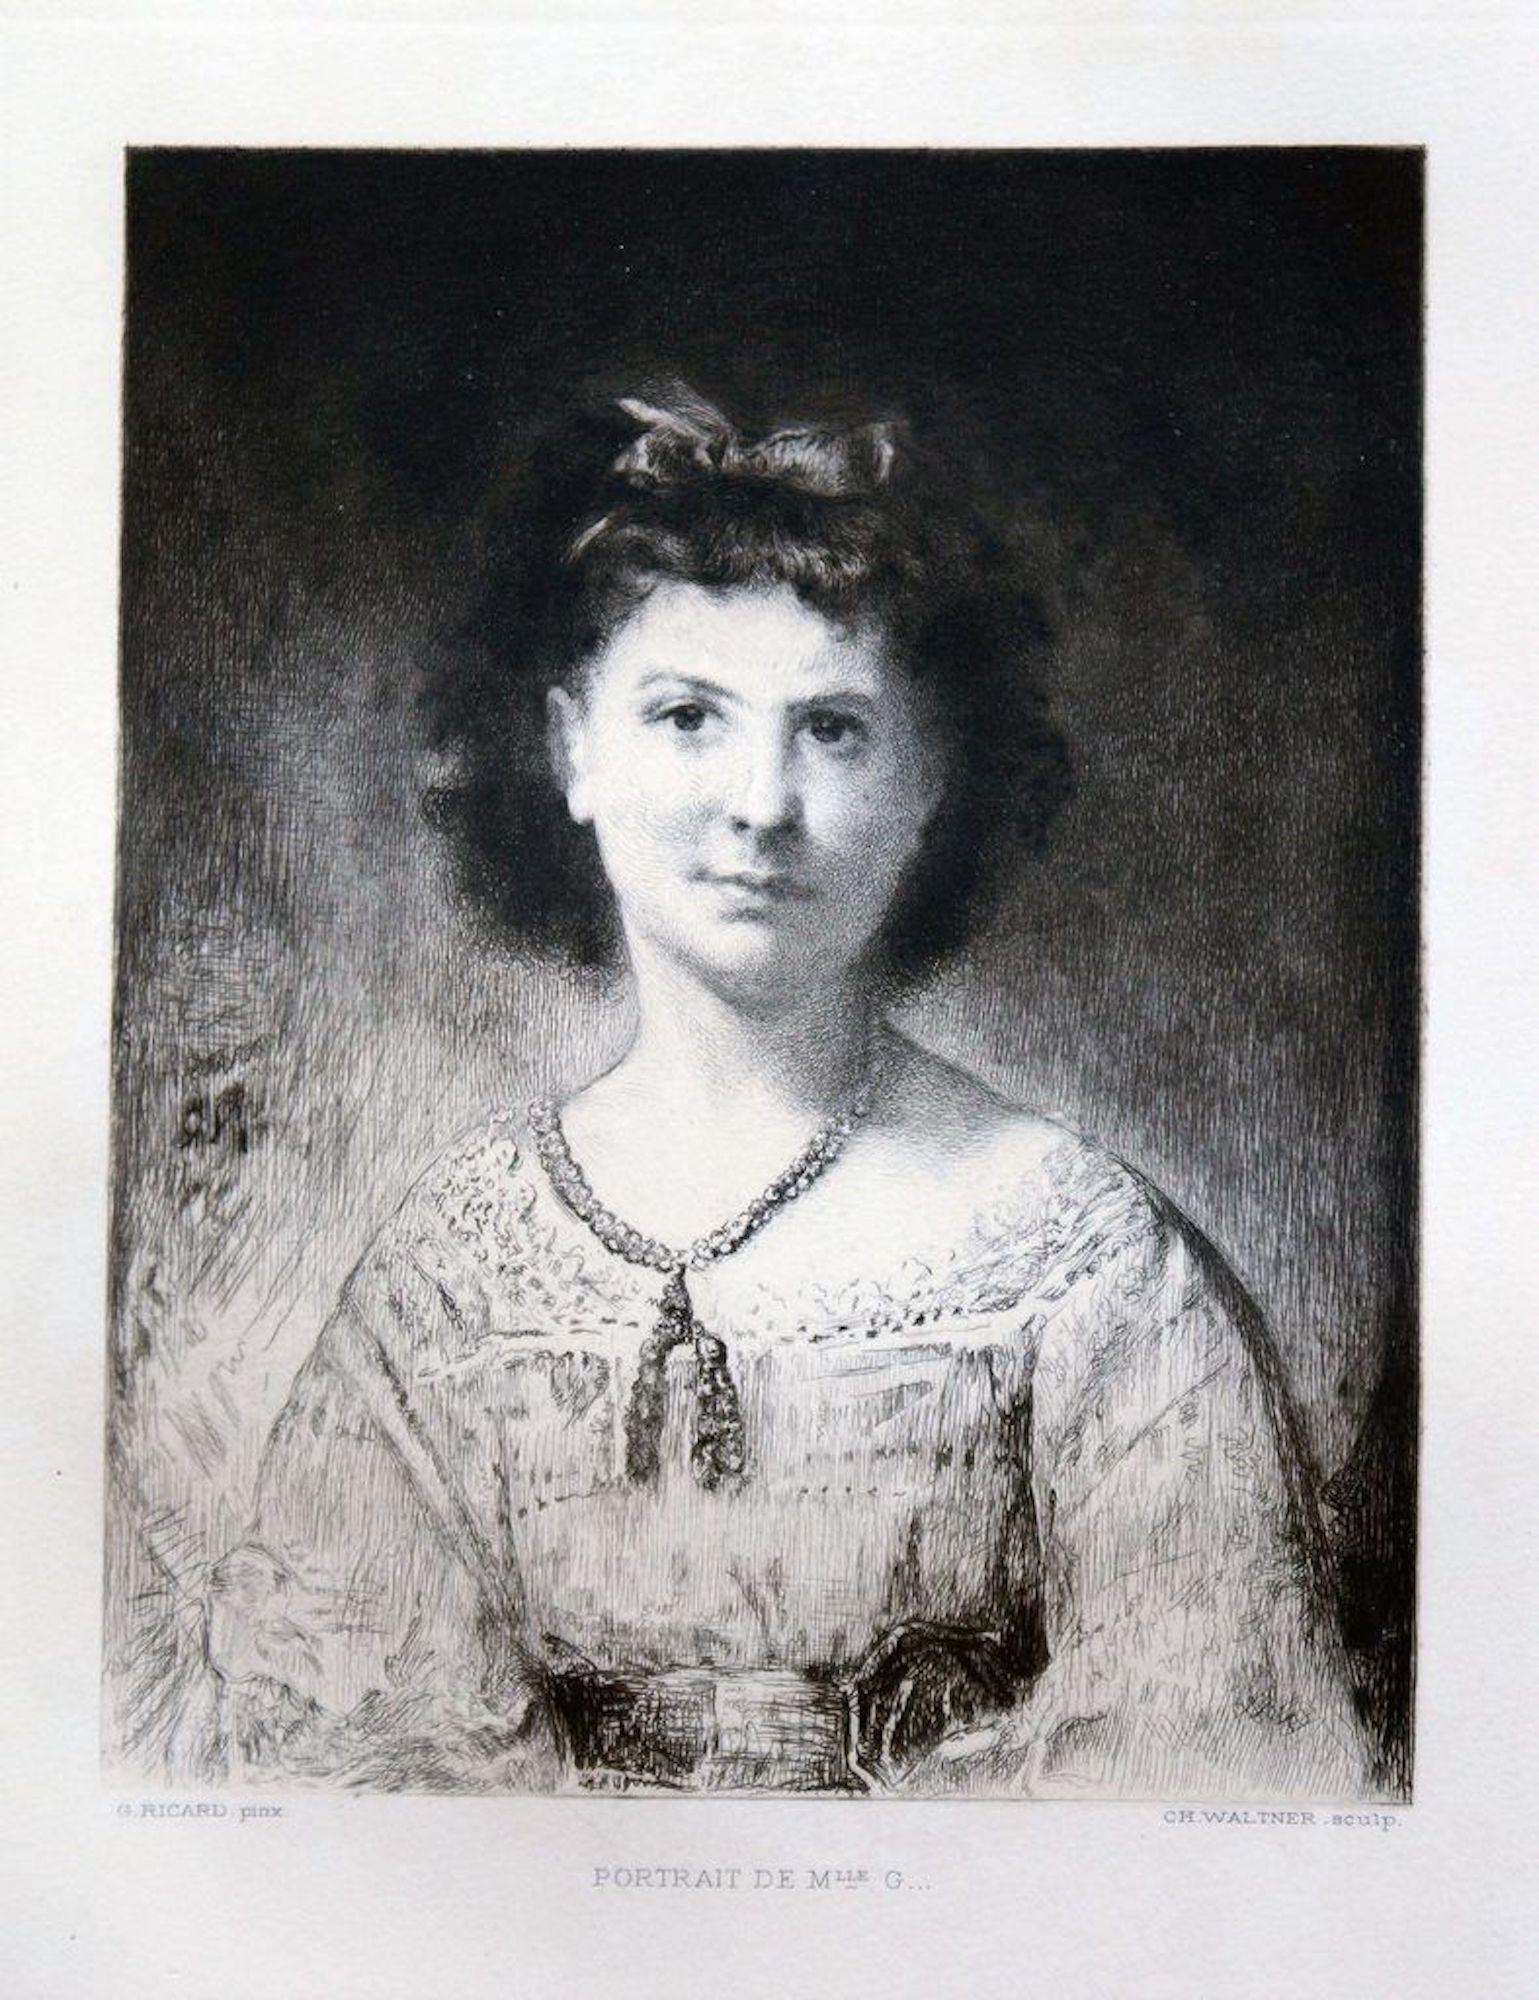 Louis-Gustave Ricard Portrait Print - Portrait de M.lle G.... - Original Etching After L.-G. Ricard by C. Waltner 